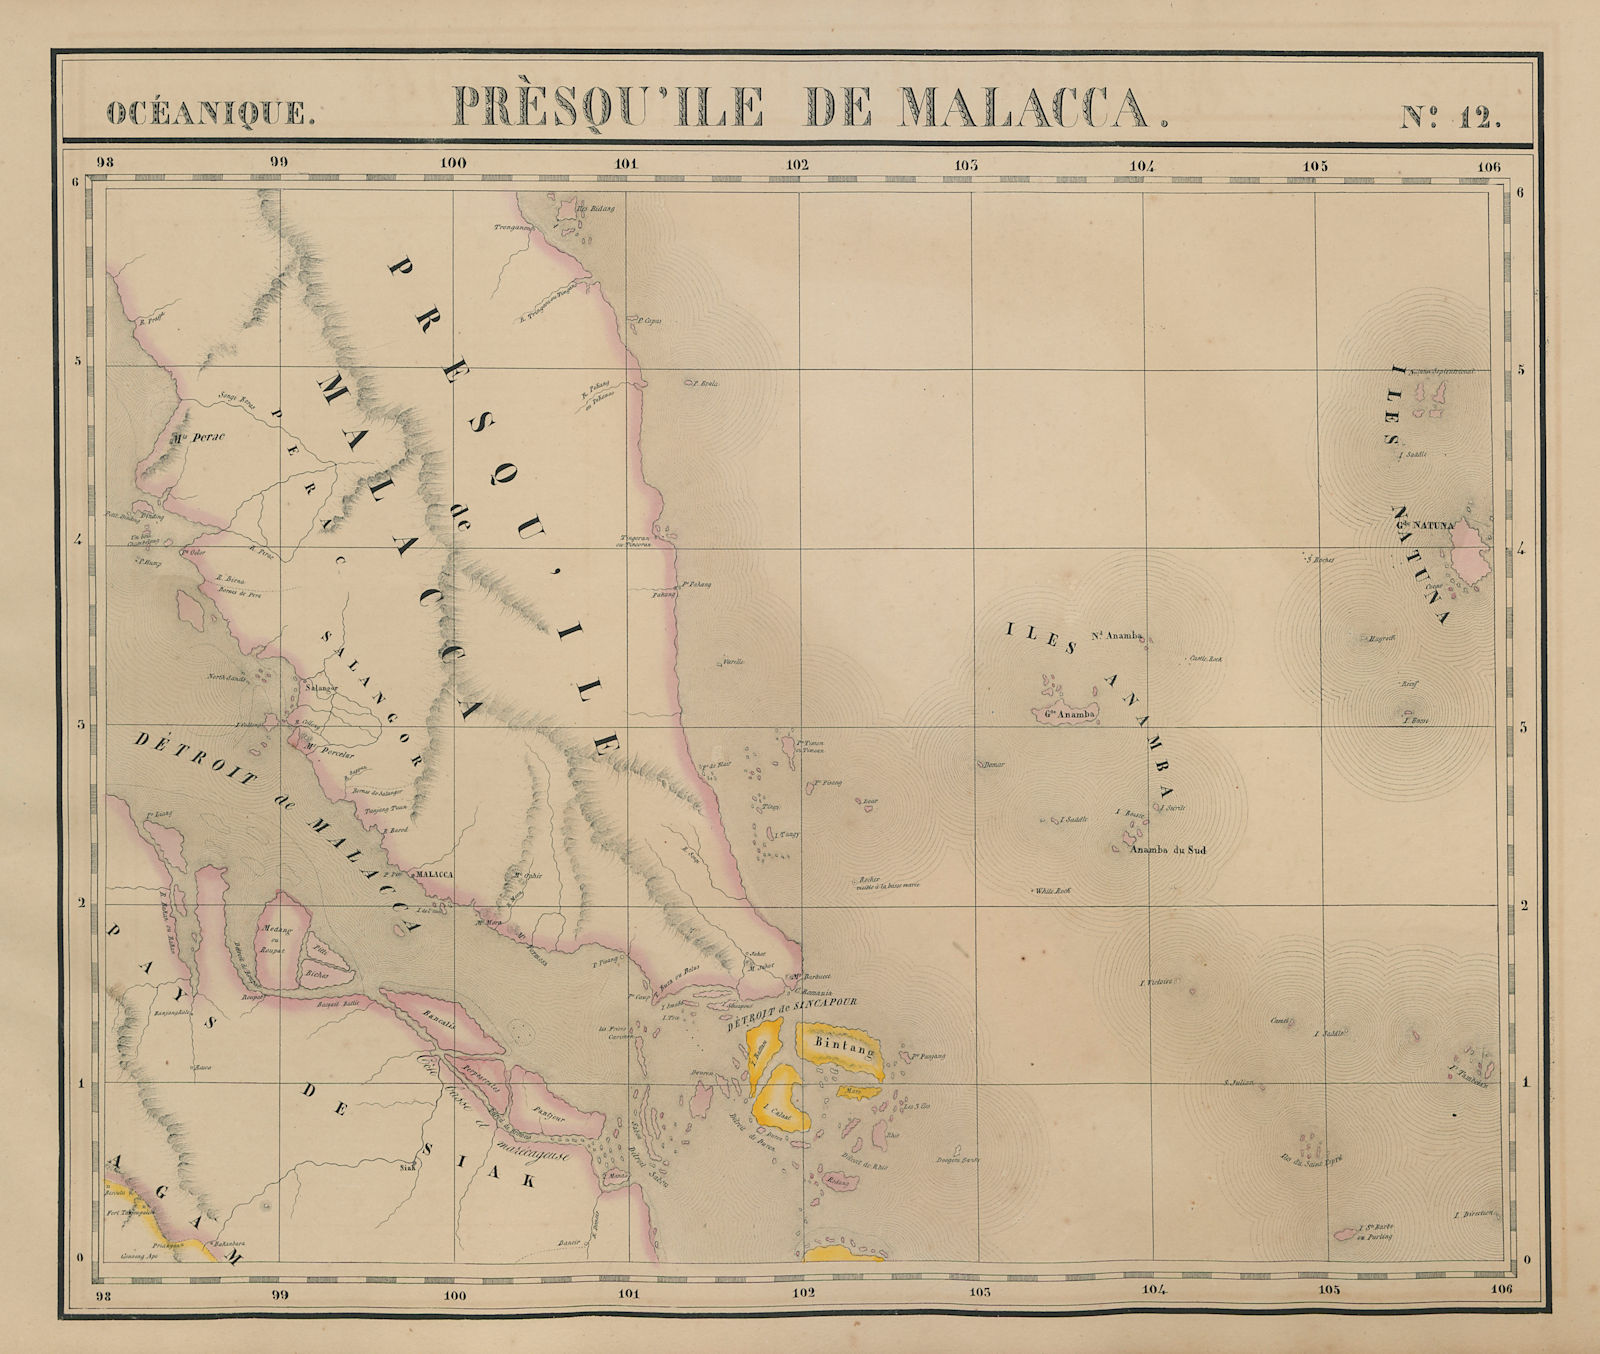 Océanique. Presqu'ile de Malacca #12. Malaysia Singapore. VANDERMAELEN 1827 map